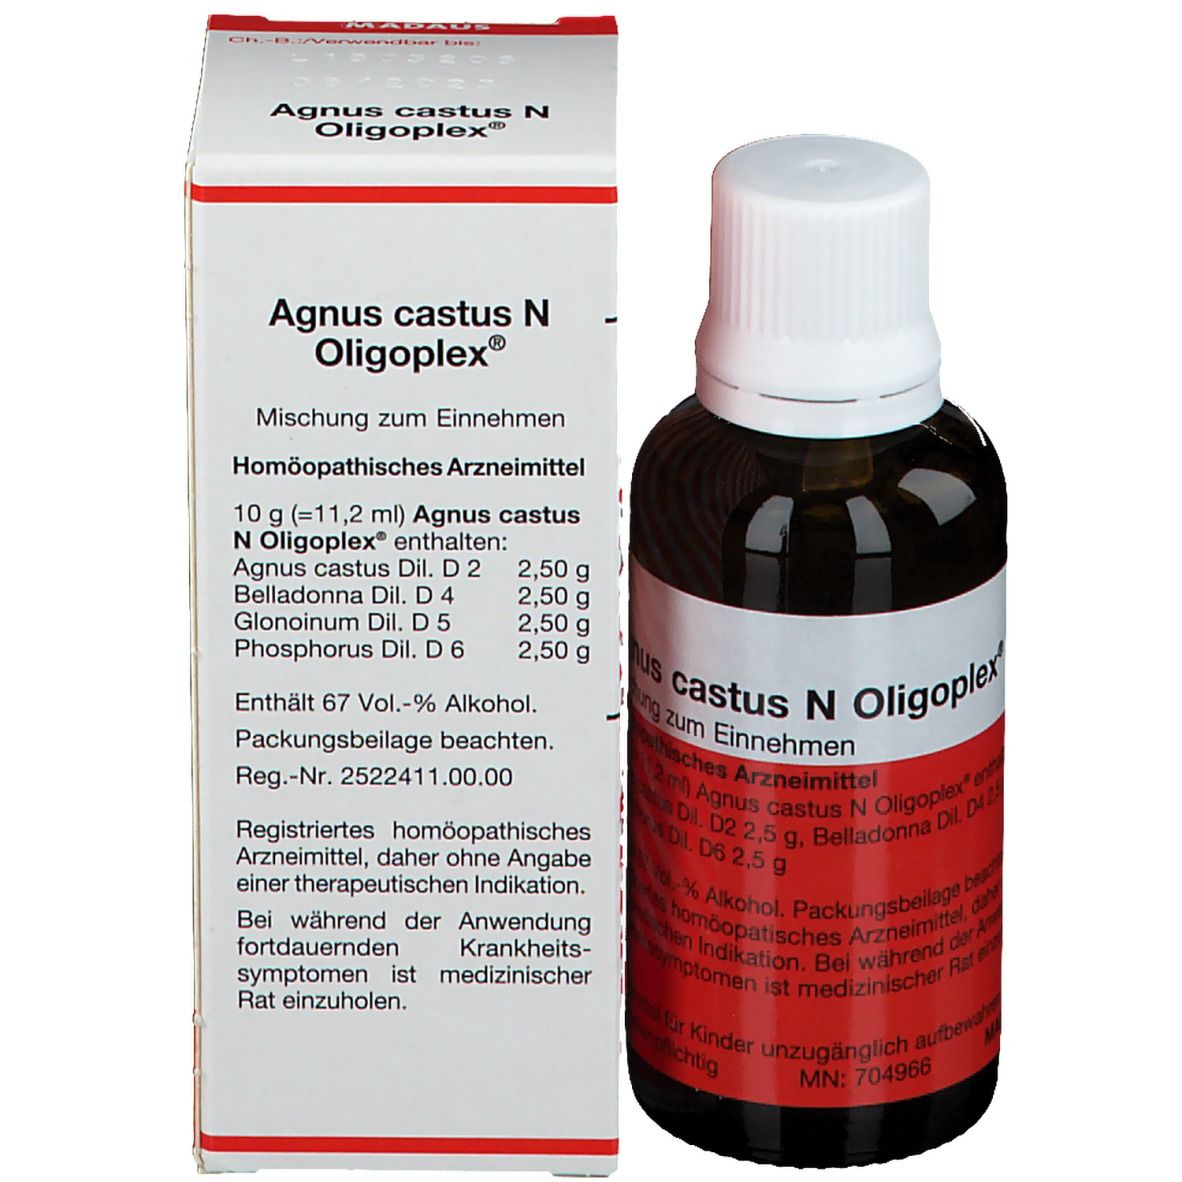 Agnus castus N Oligoplex®